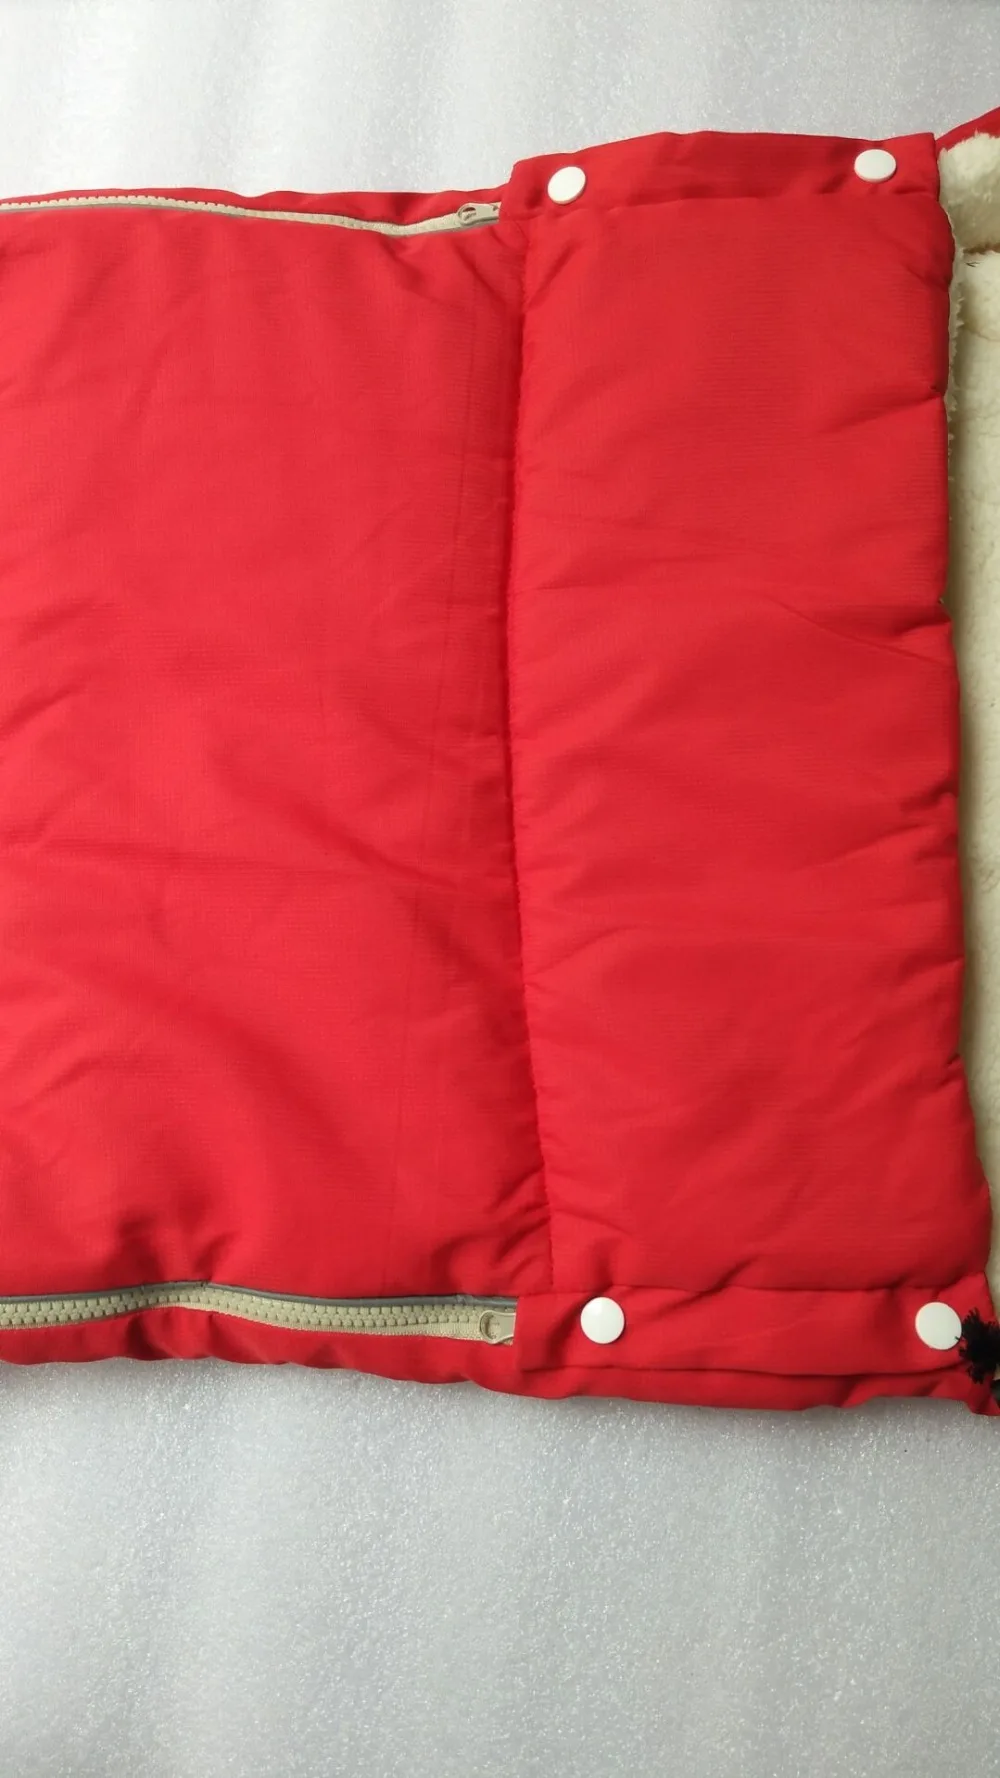 Горячая Распродажа 2018 новый детский спальный мешок ветрозащитный детская коляска сумка Bunting 0-36 м детская коляска аксессуары спальный мешок